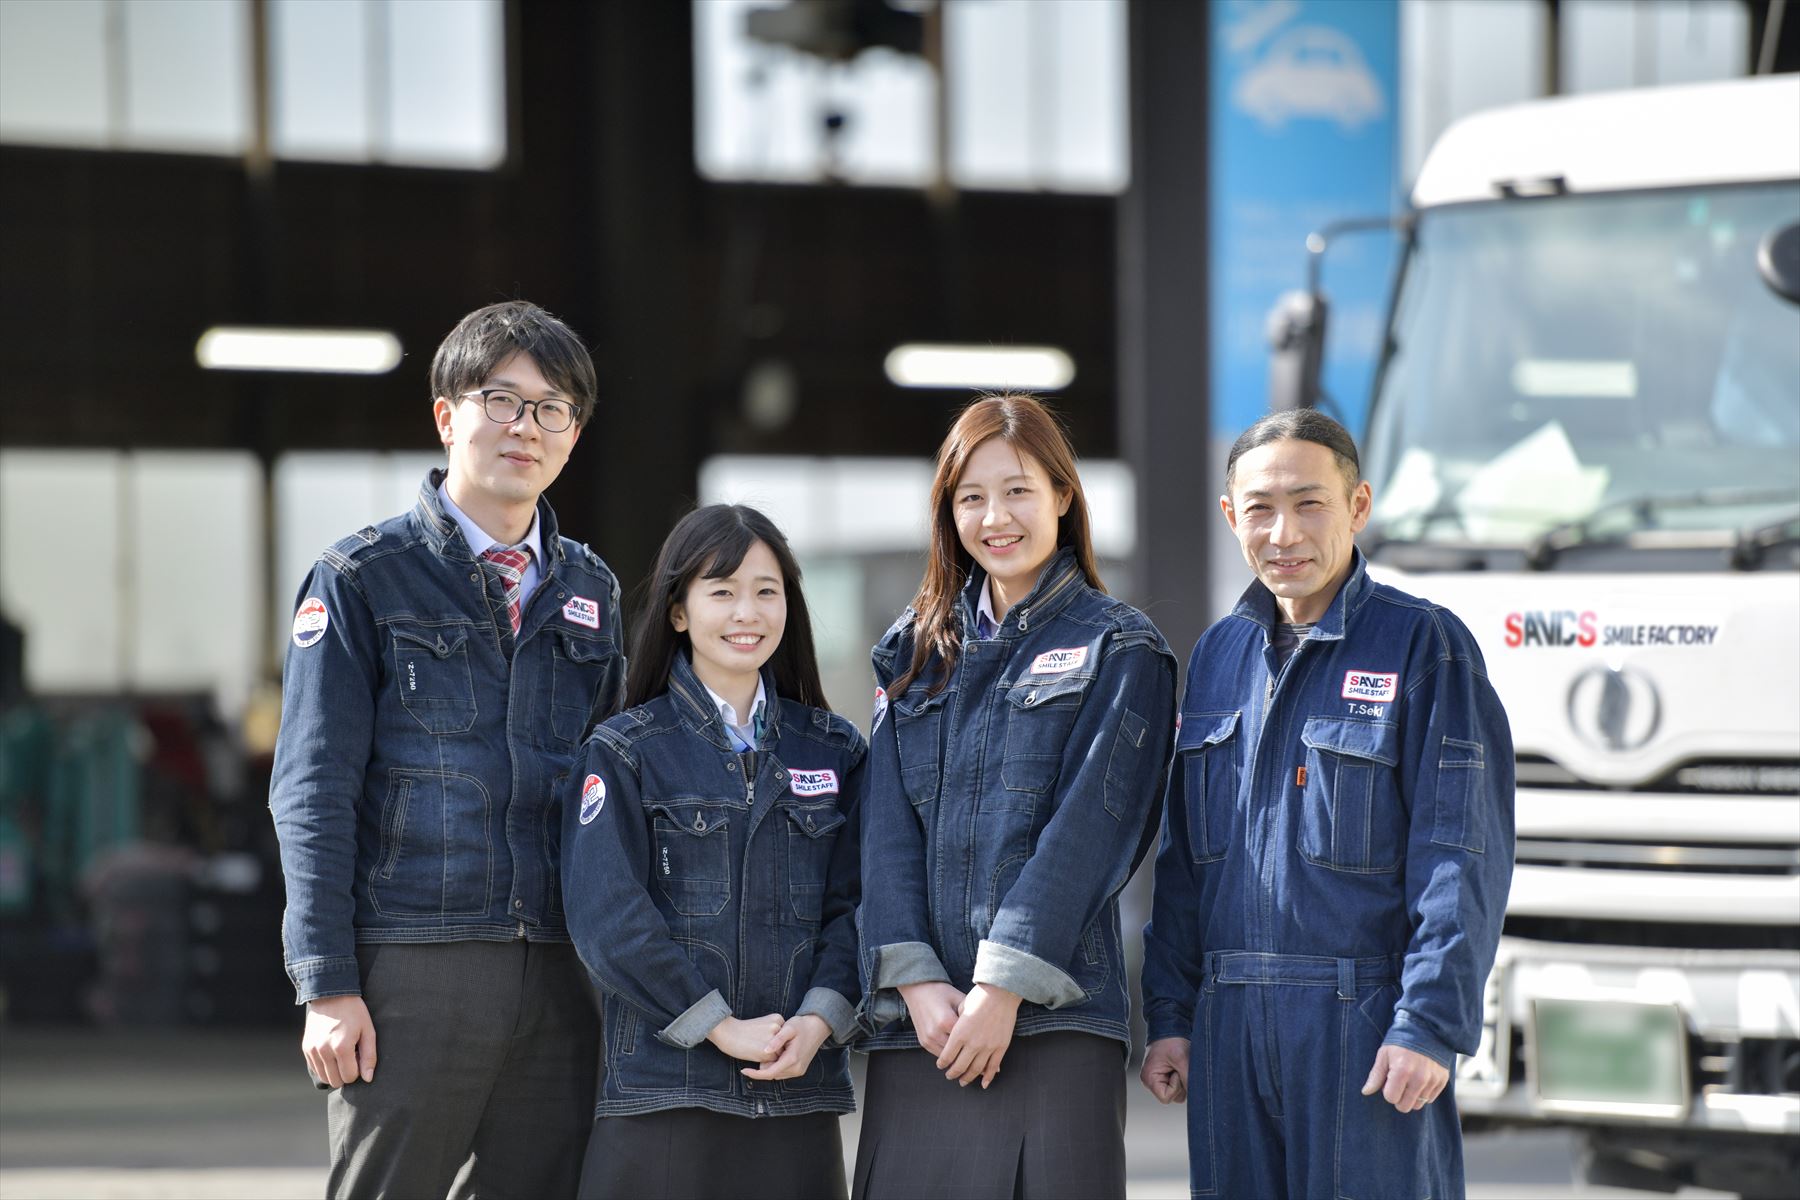 社員70名の「働く車の快適環境創造業」。日本初のEVトラックを作るなど挑戦している会社です！